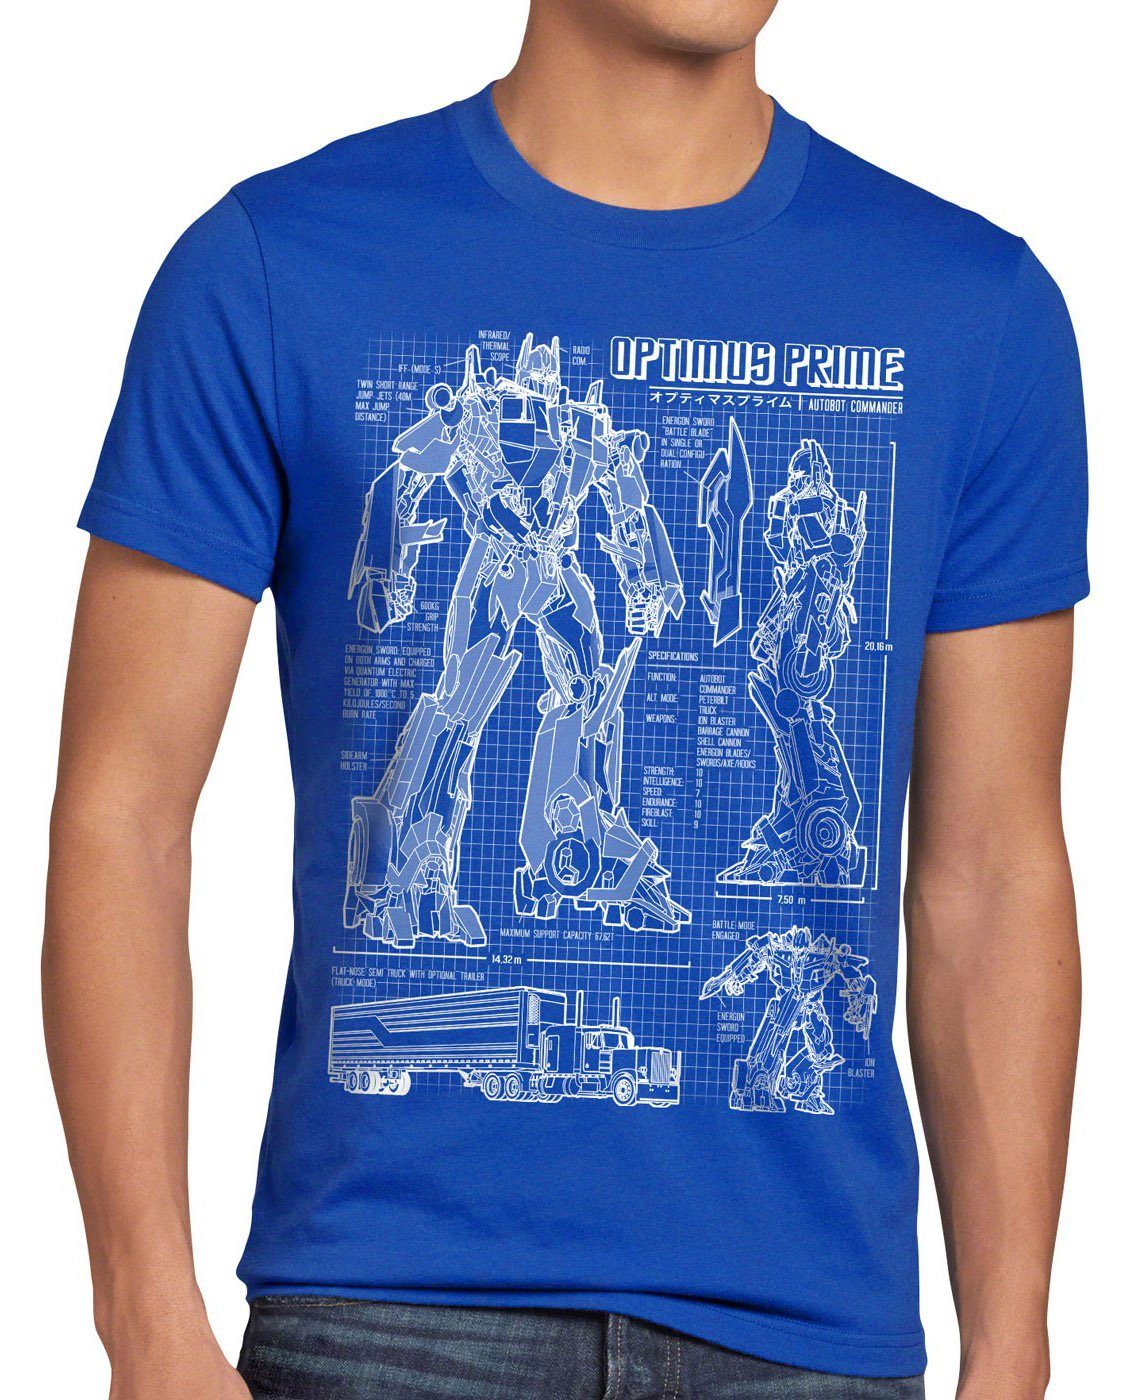 Print-Shirt blaupause Prime Herren Optimus style3 autobot T-Shirt